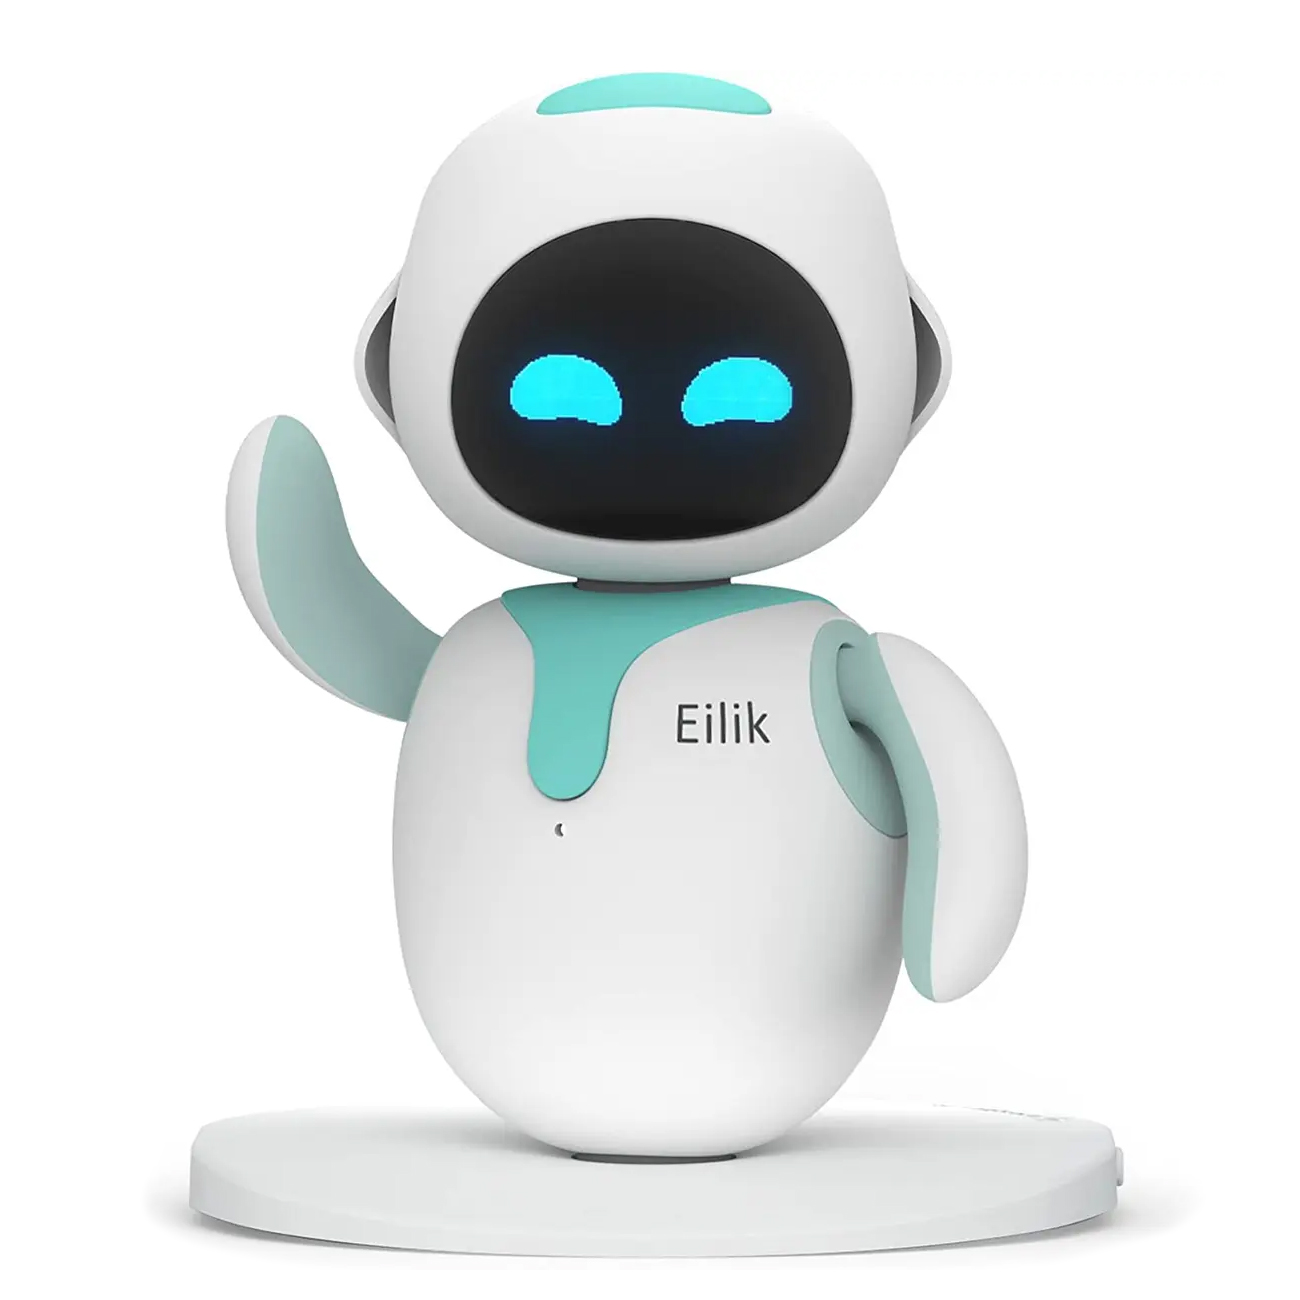 Робот Eilik интерактивный компаньон для дома Blue